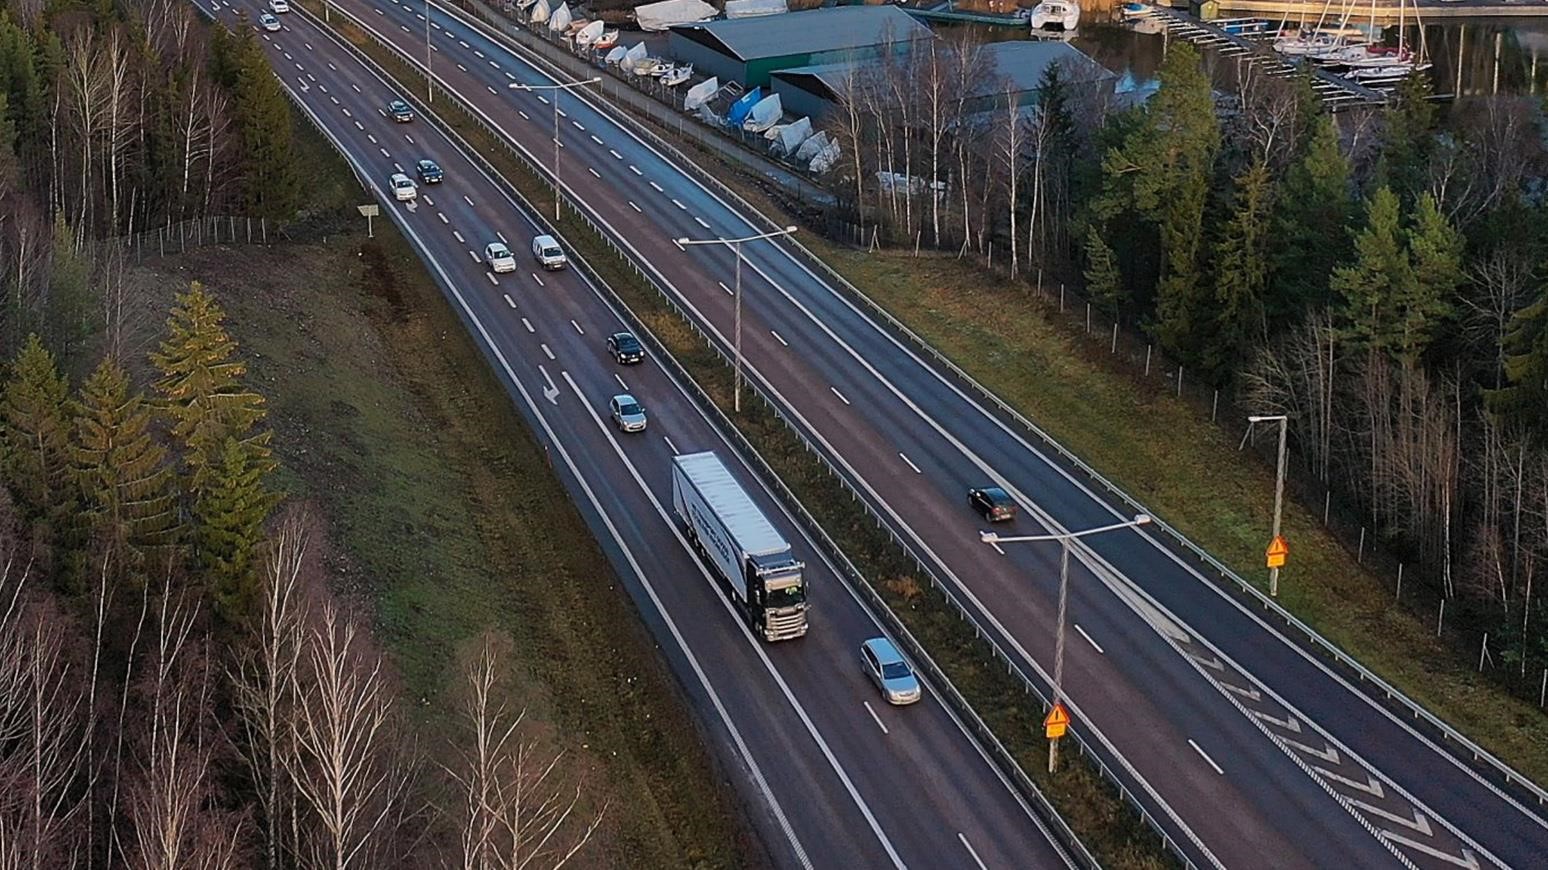 Scania’s Self-Driving Truck Testing Extends To All Roads Between Södertälje & Jönköping